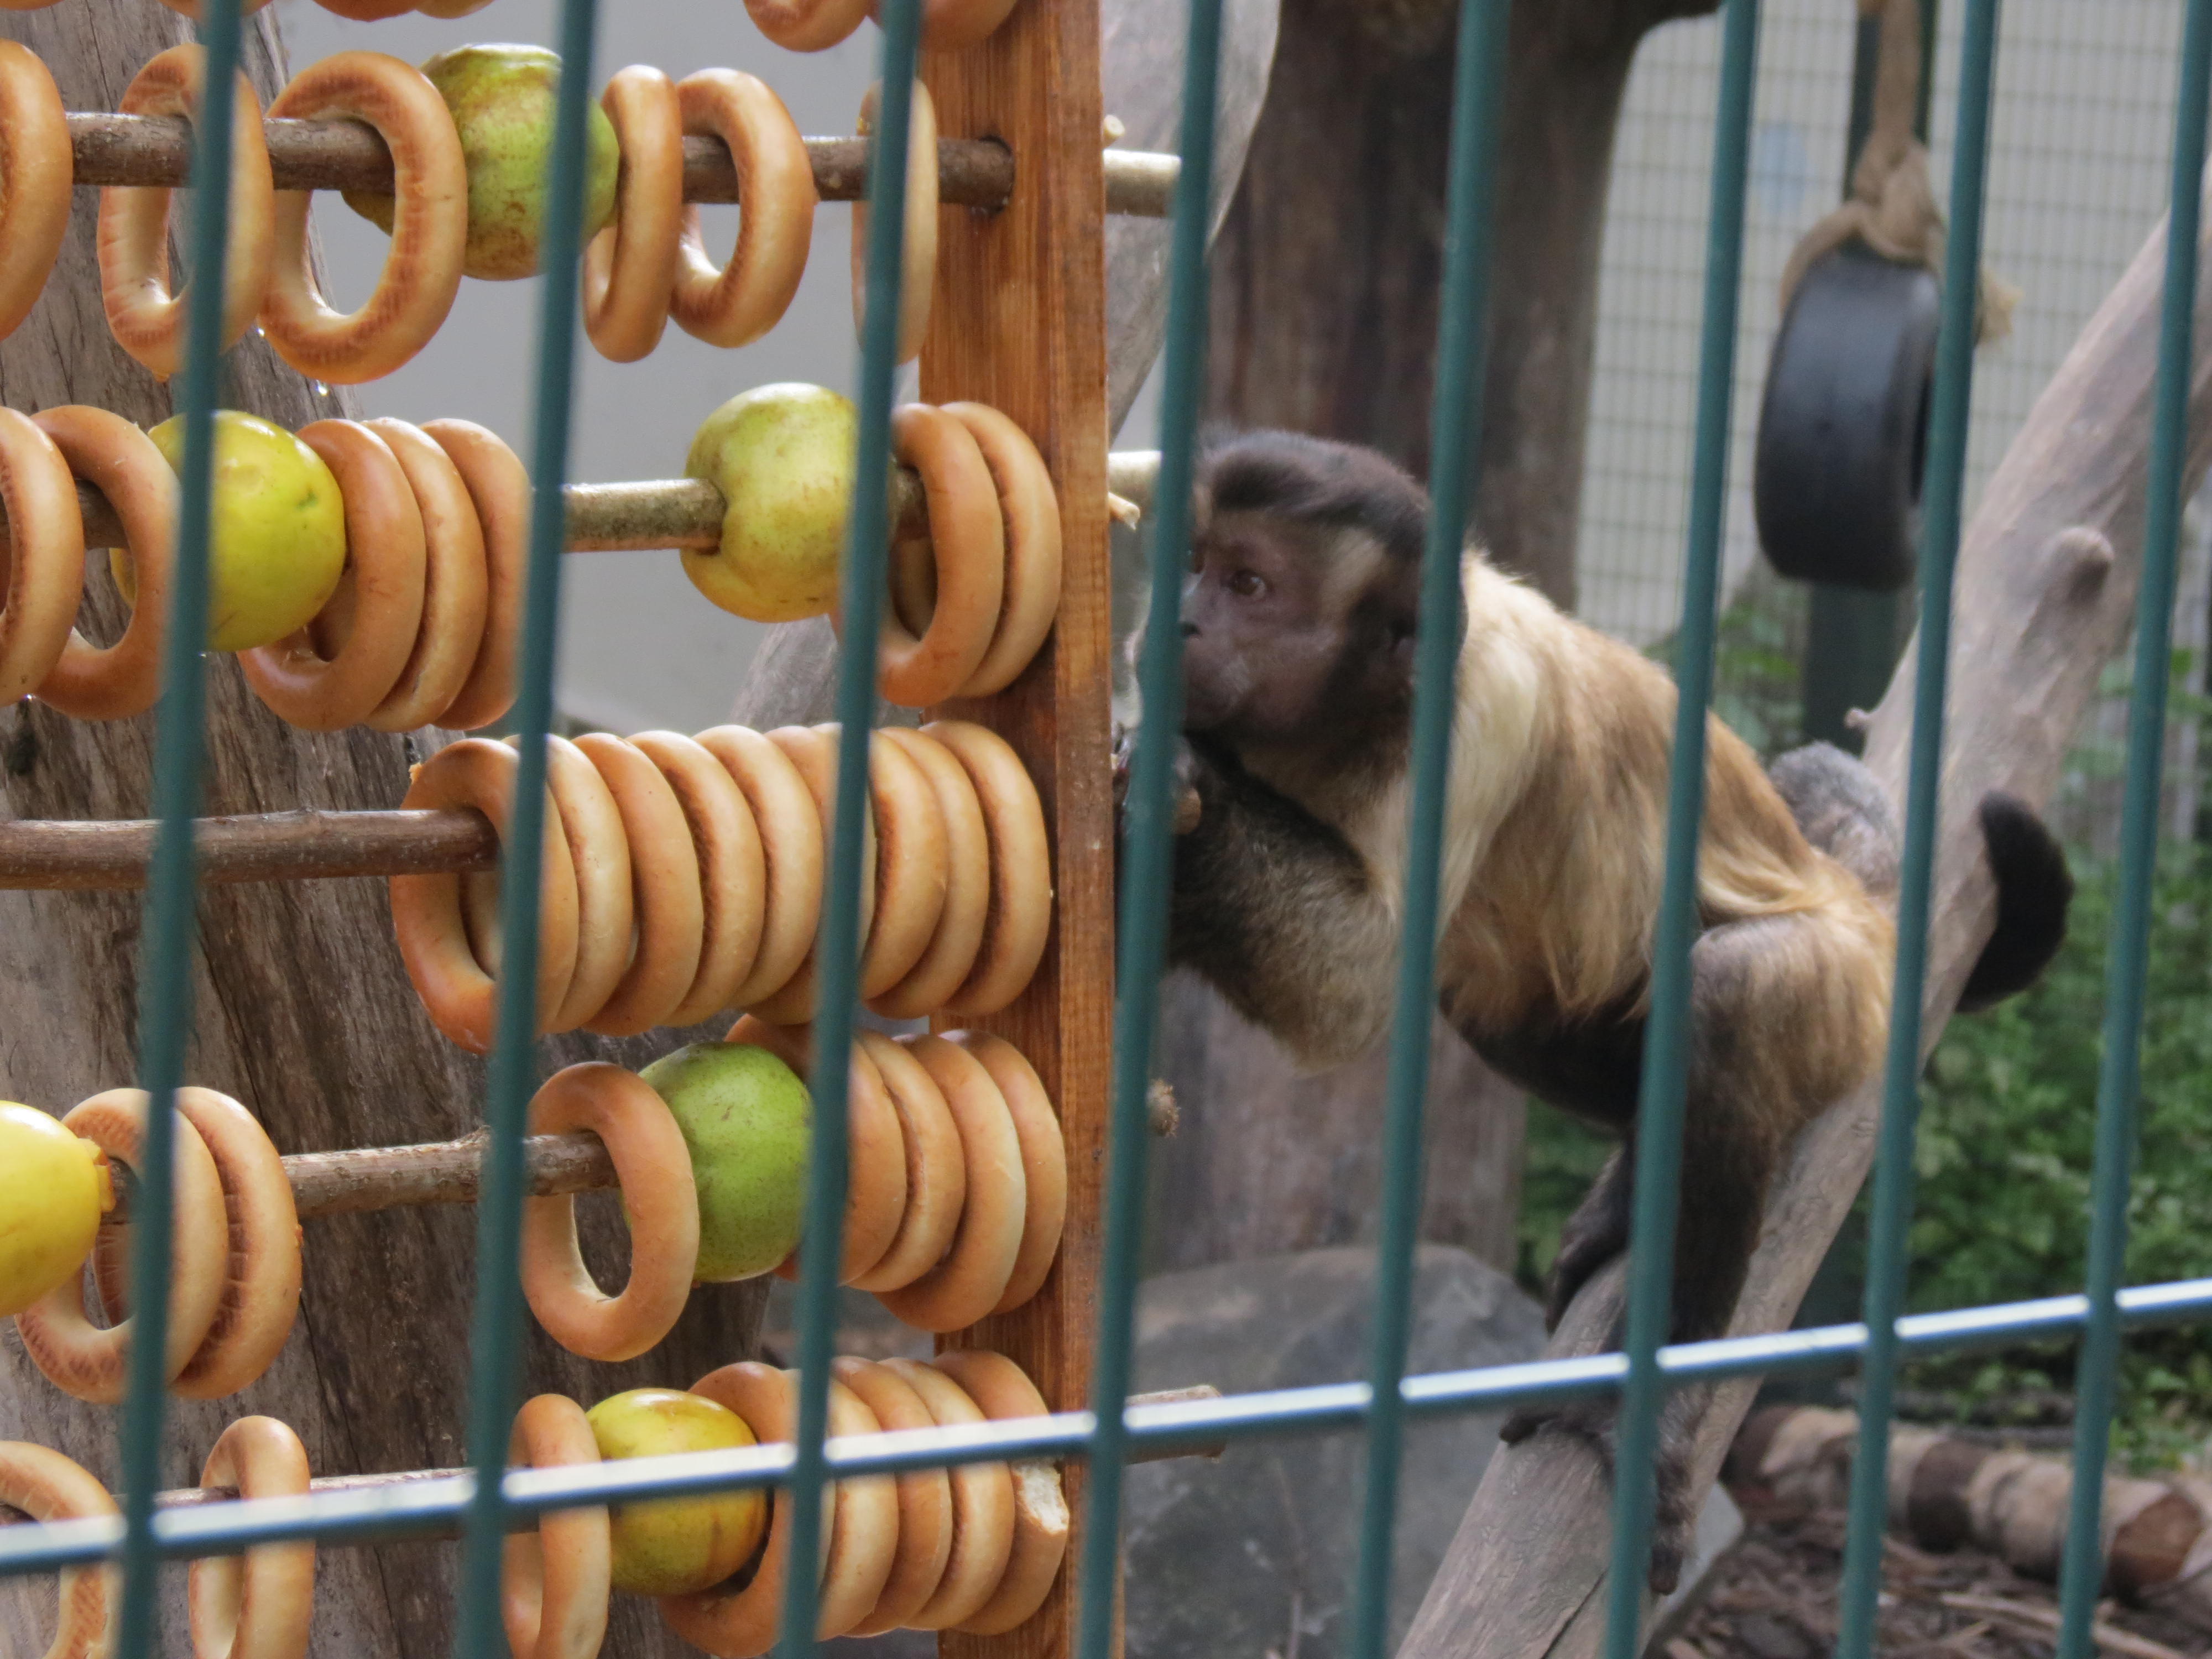 Зоопарк устраивал акцию. Идеи для мини зоопарка. Мини зоопарк. Лимпопо Нижний Новгород зоопарк маленькие обезьянки. Обезьянка с баранками.